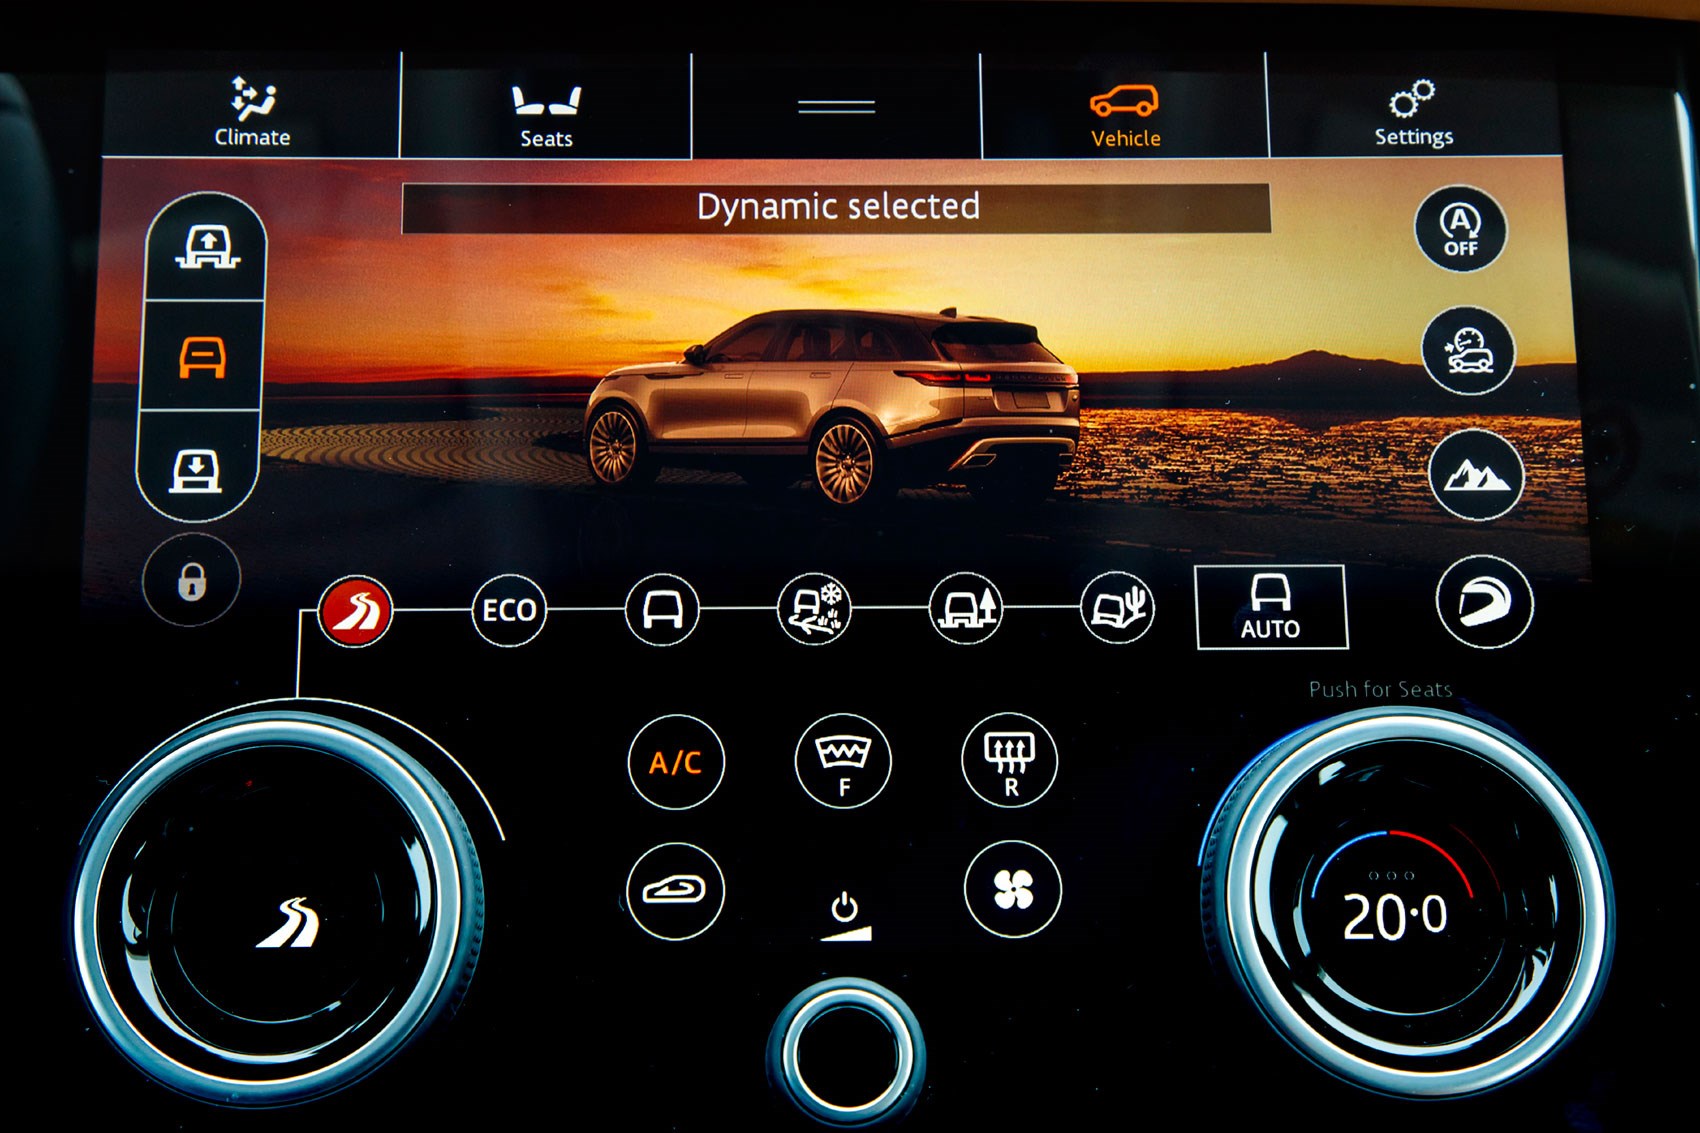 The digital screens on the new Range Rover Velar